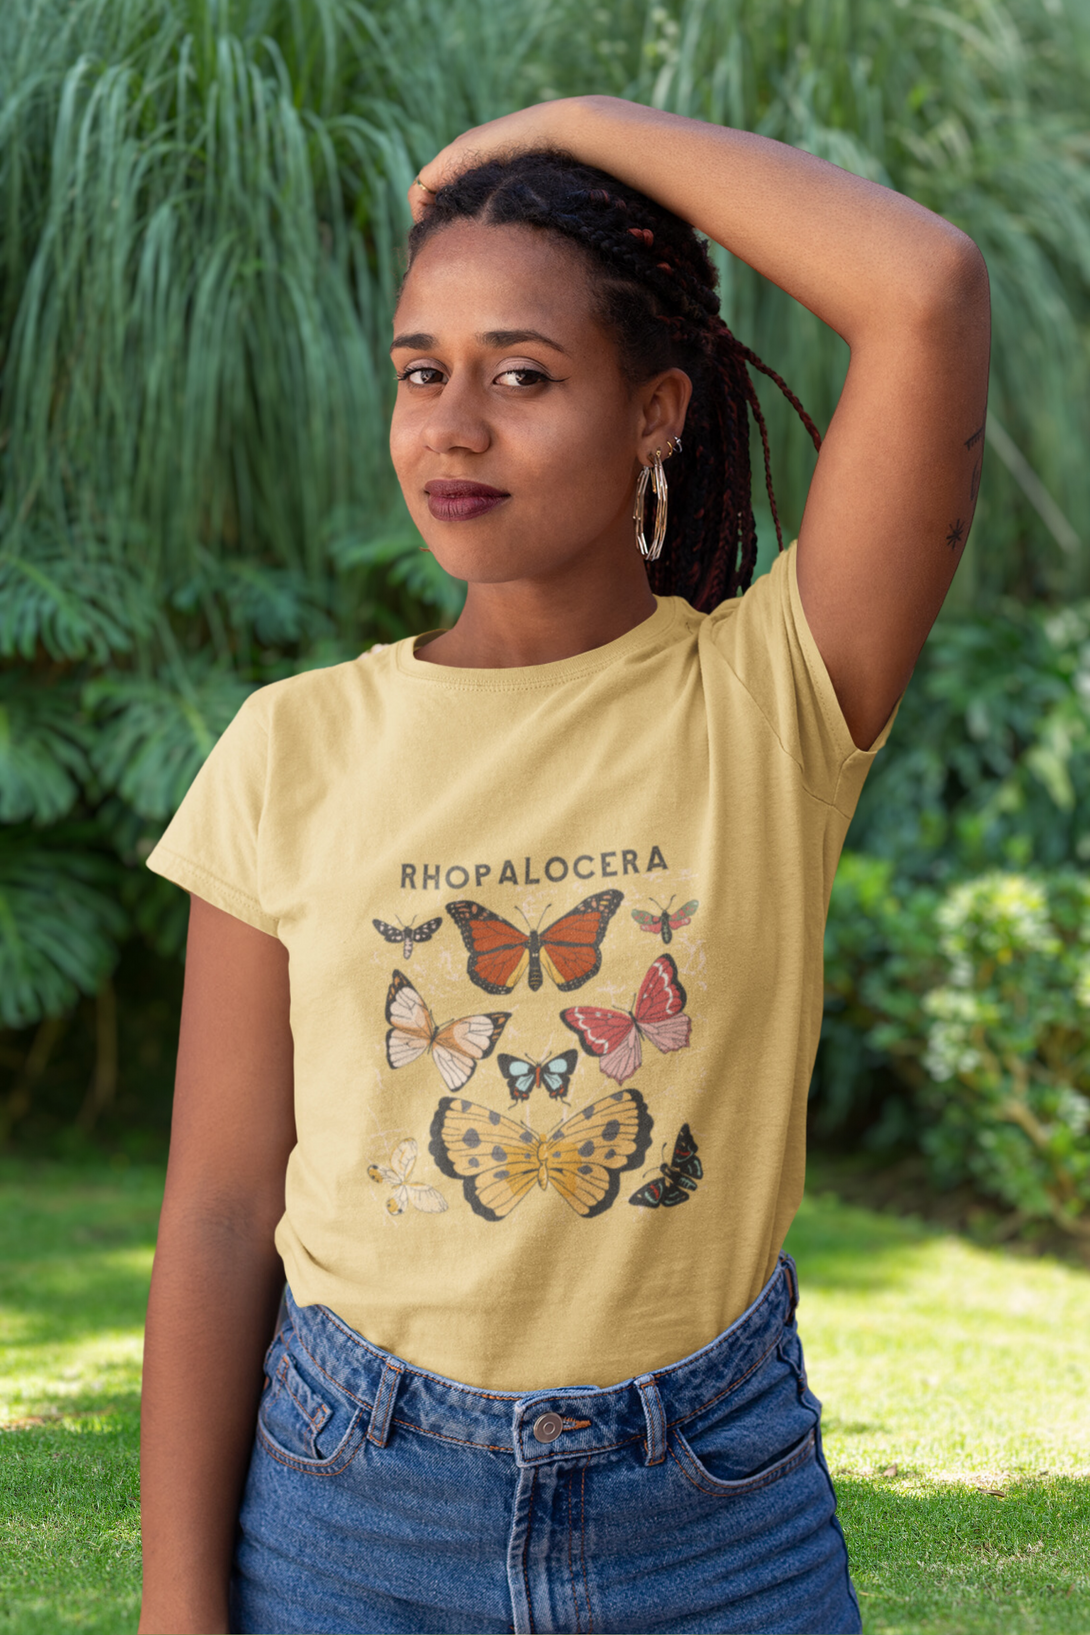 Rhopalocera Printed T-Shirt For Women - WowWaves - 6